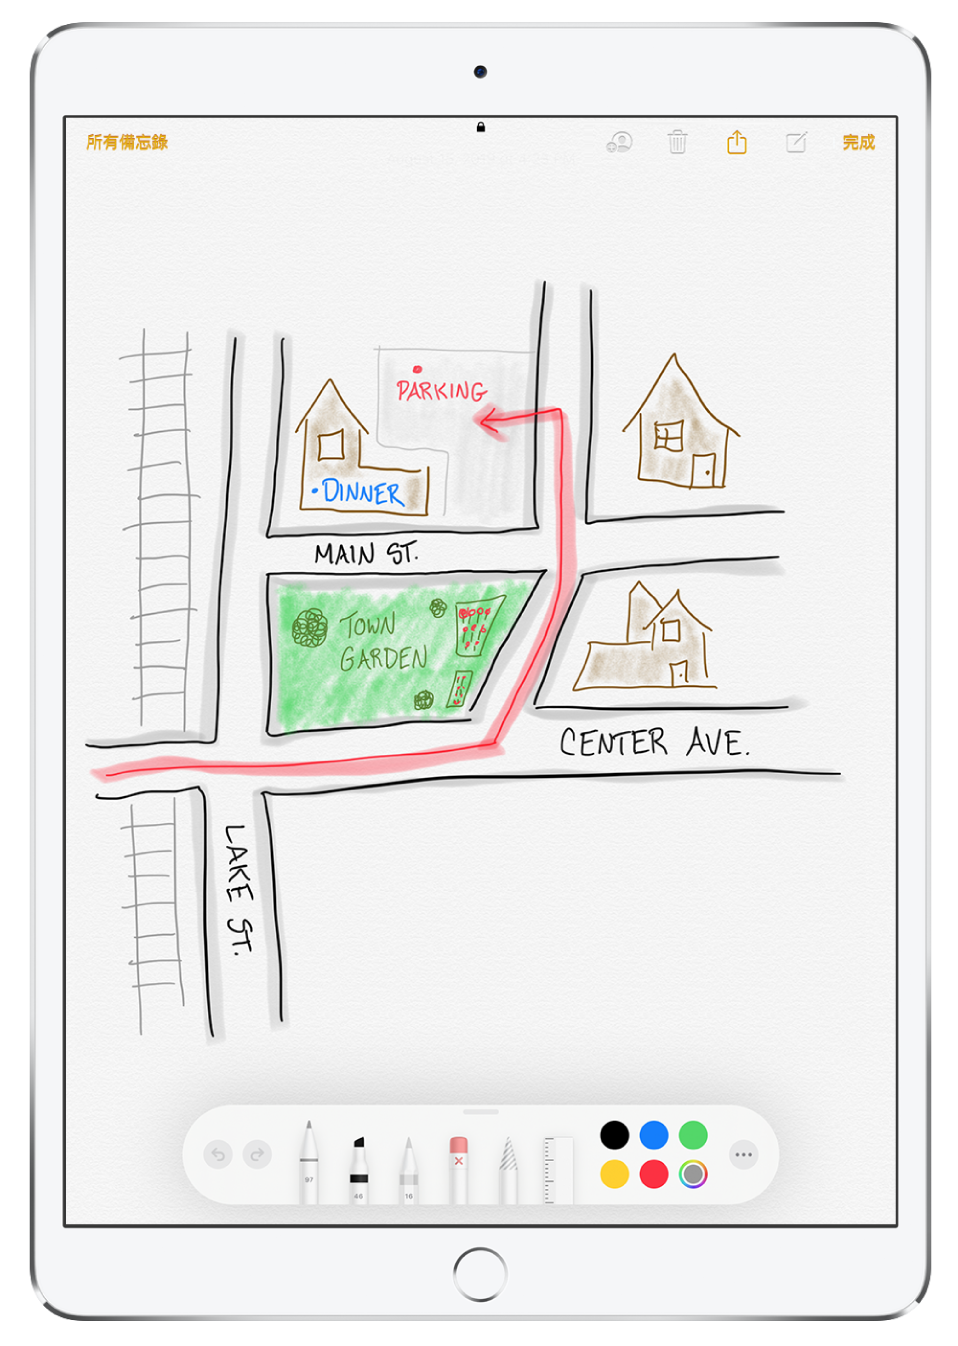 在「備忘錄」App 中，一個備忘錄裡的周遭環境繪圖。繪圖包含加上標籤的街道，以及指向附近公園的紅色箭頭。螢幕底部是「標示」工具列，選取了書寫用具和自訂顏色。